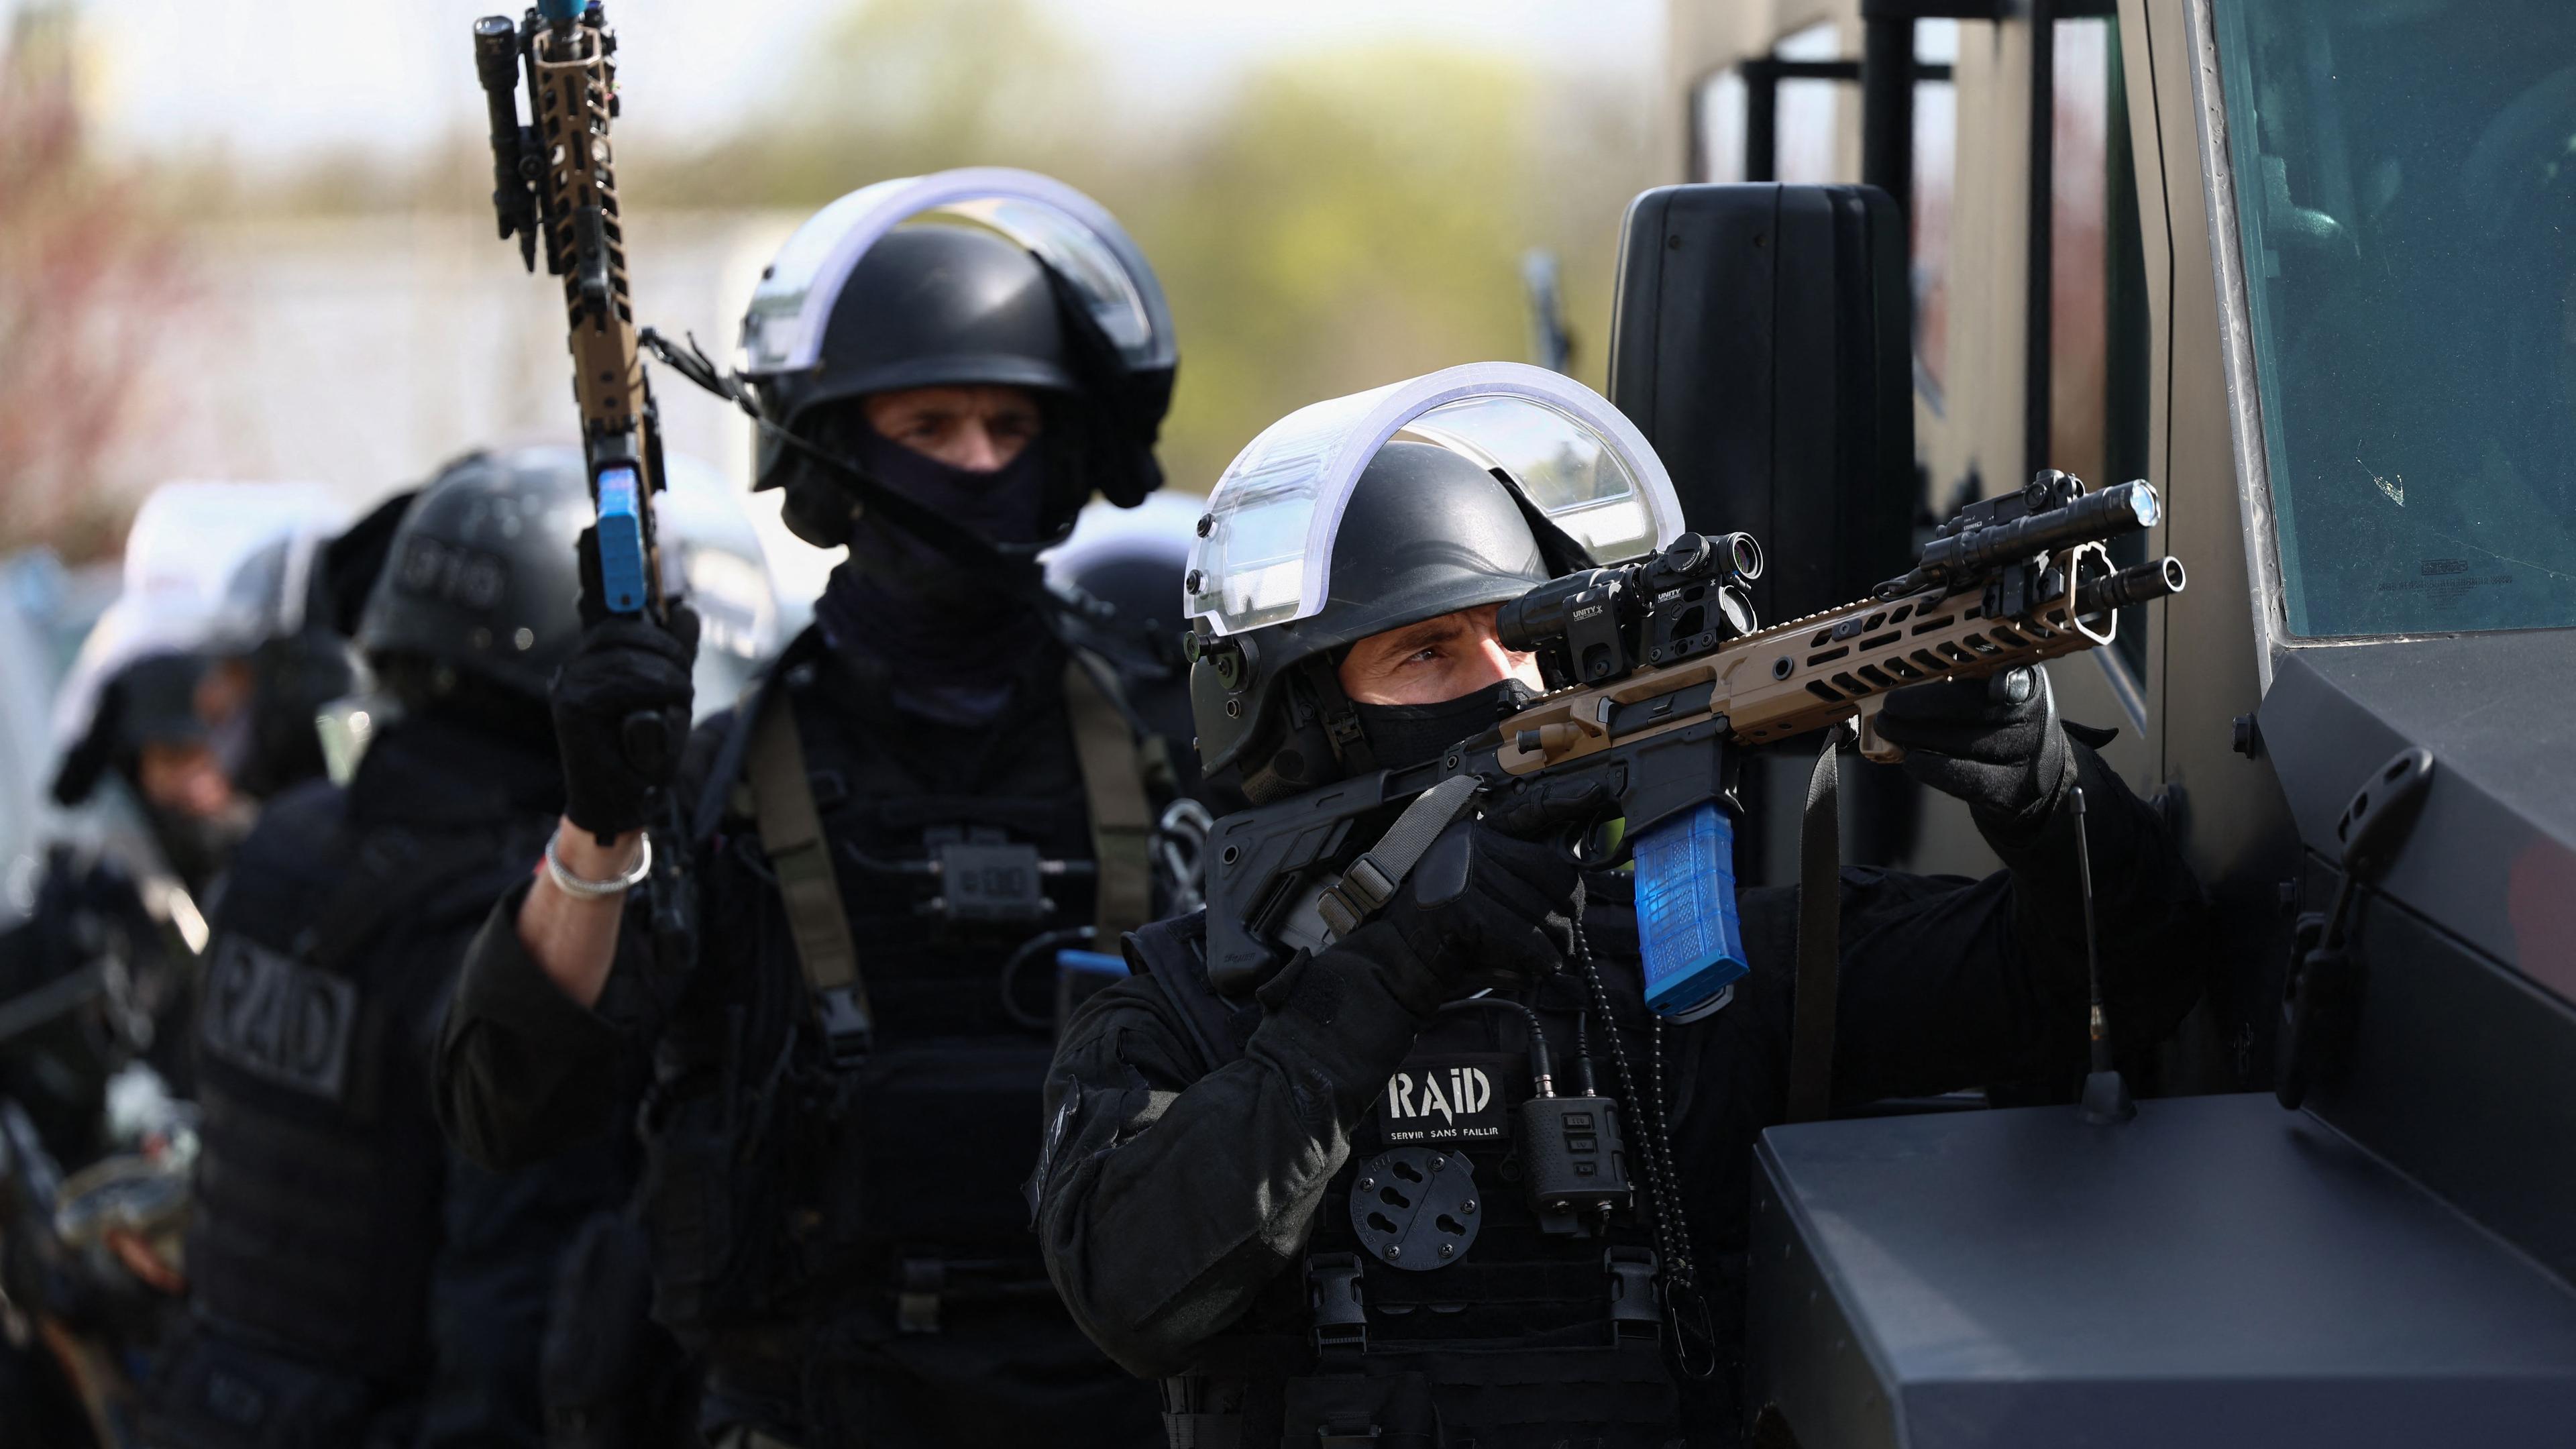 Foto ilustrativa dos membros da Raid, a unidade de intervenção da polícia francesa. 